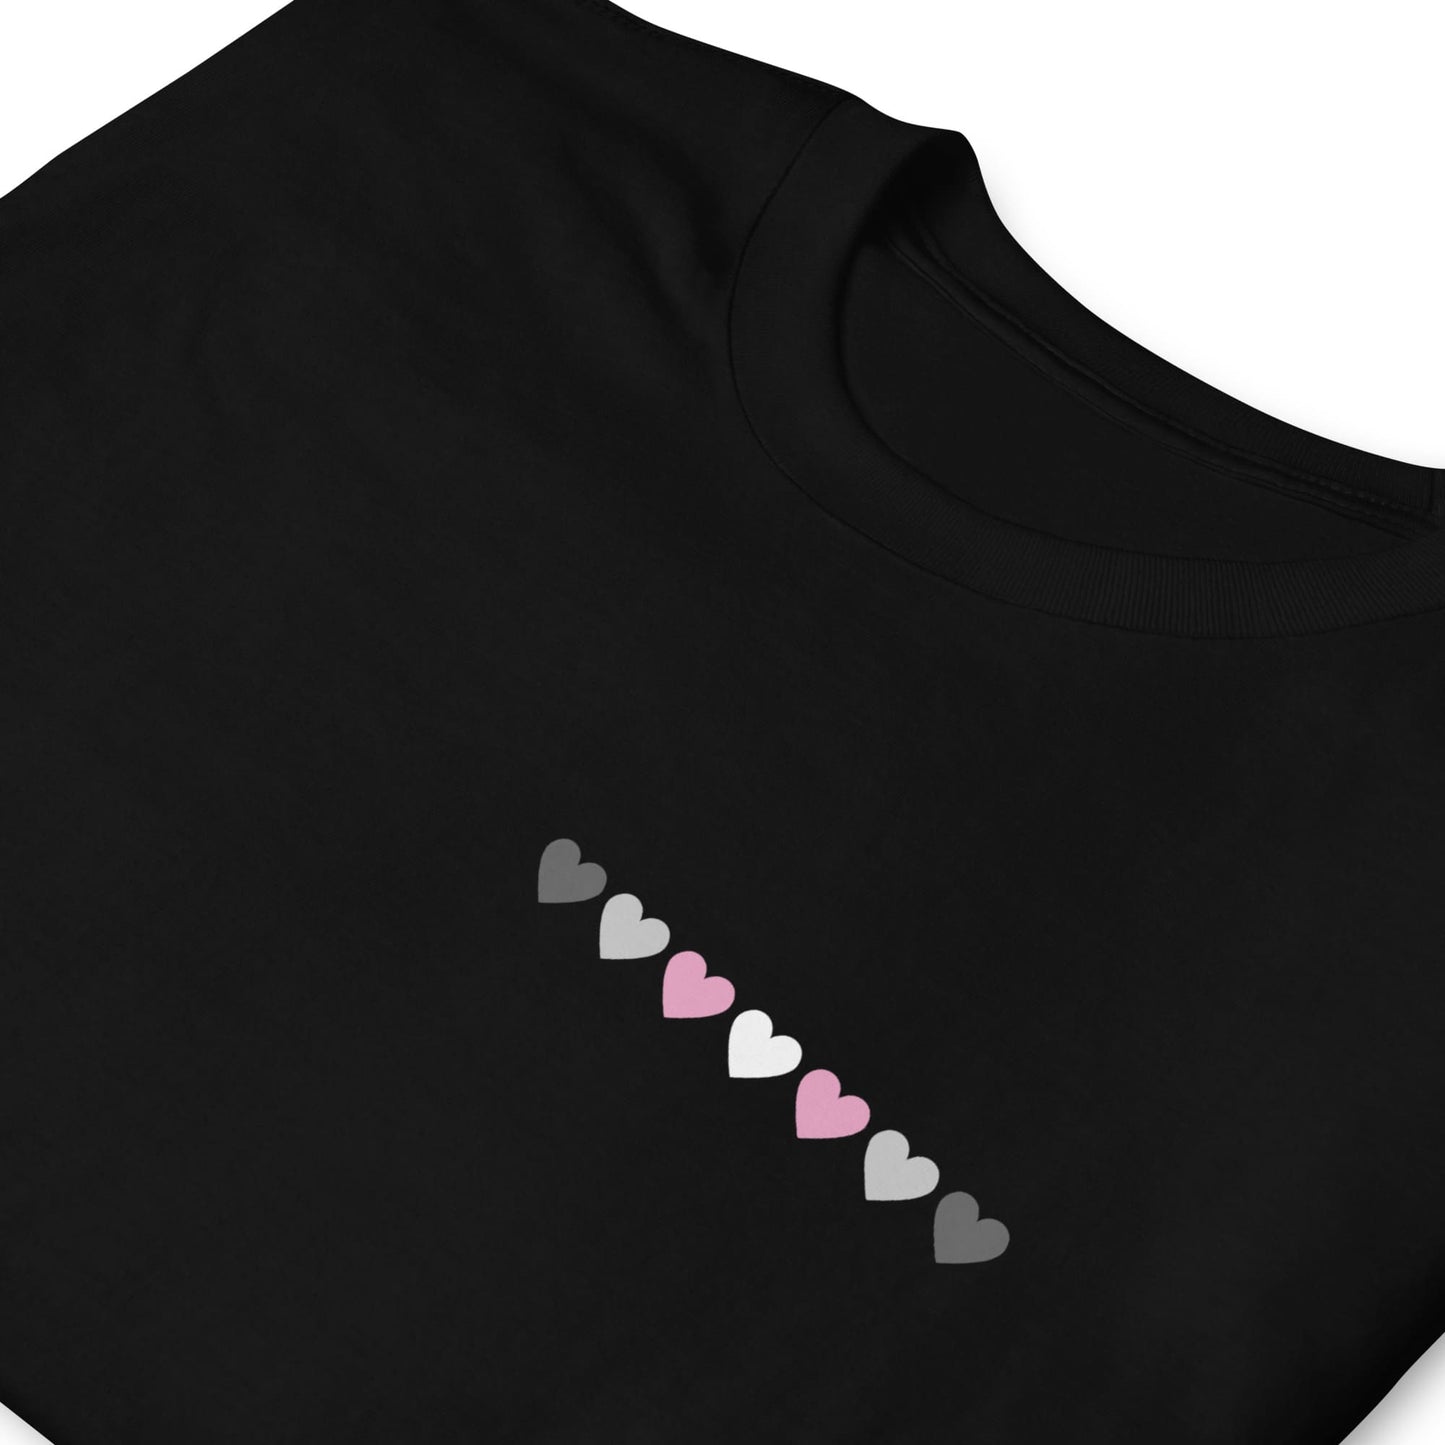 demigirl shirt, subtle demigender pride pocket design tee, zoom